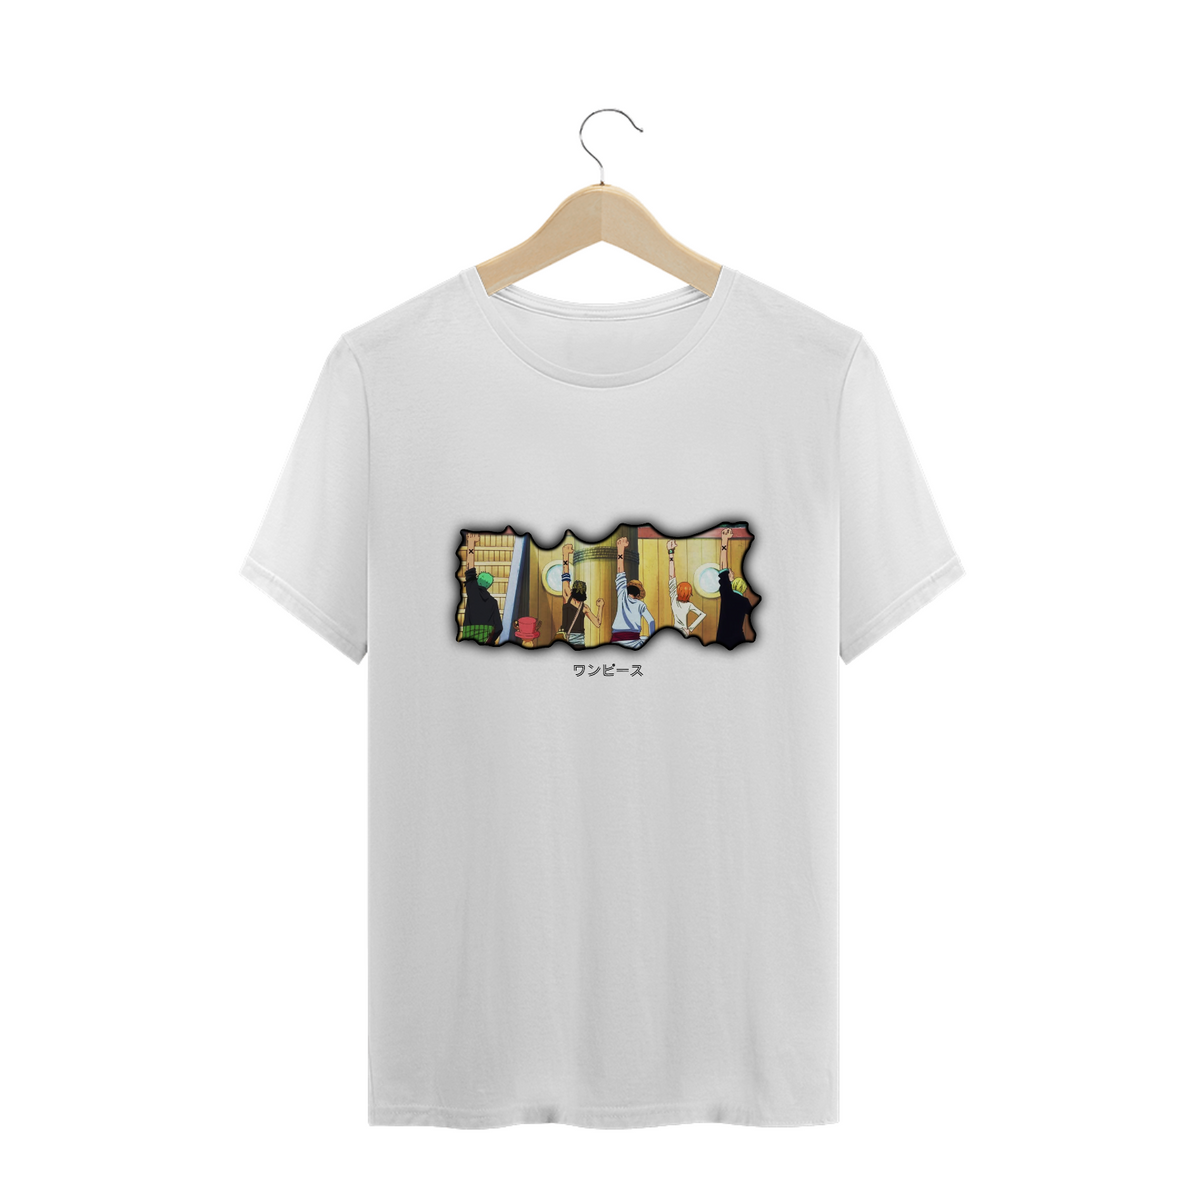 Nome do produto: T-shirt One Piece - Companheiros (brilho escuro)